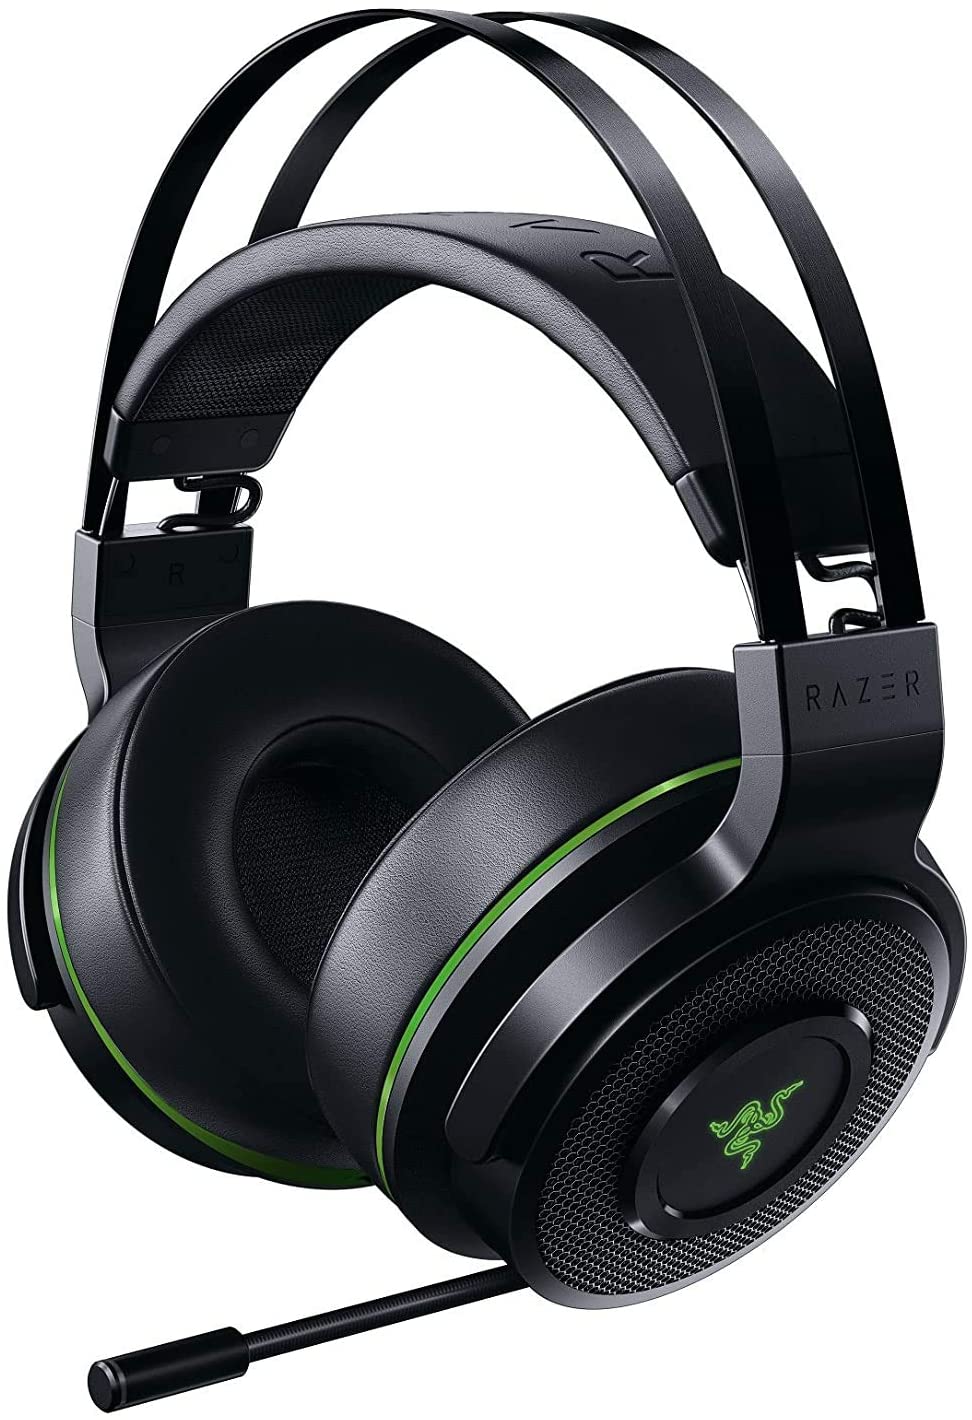 Le casque Razer Batteuse Xbox One/PC - DiscoAzul.com